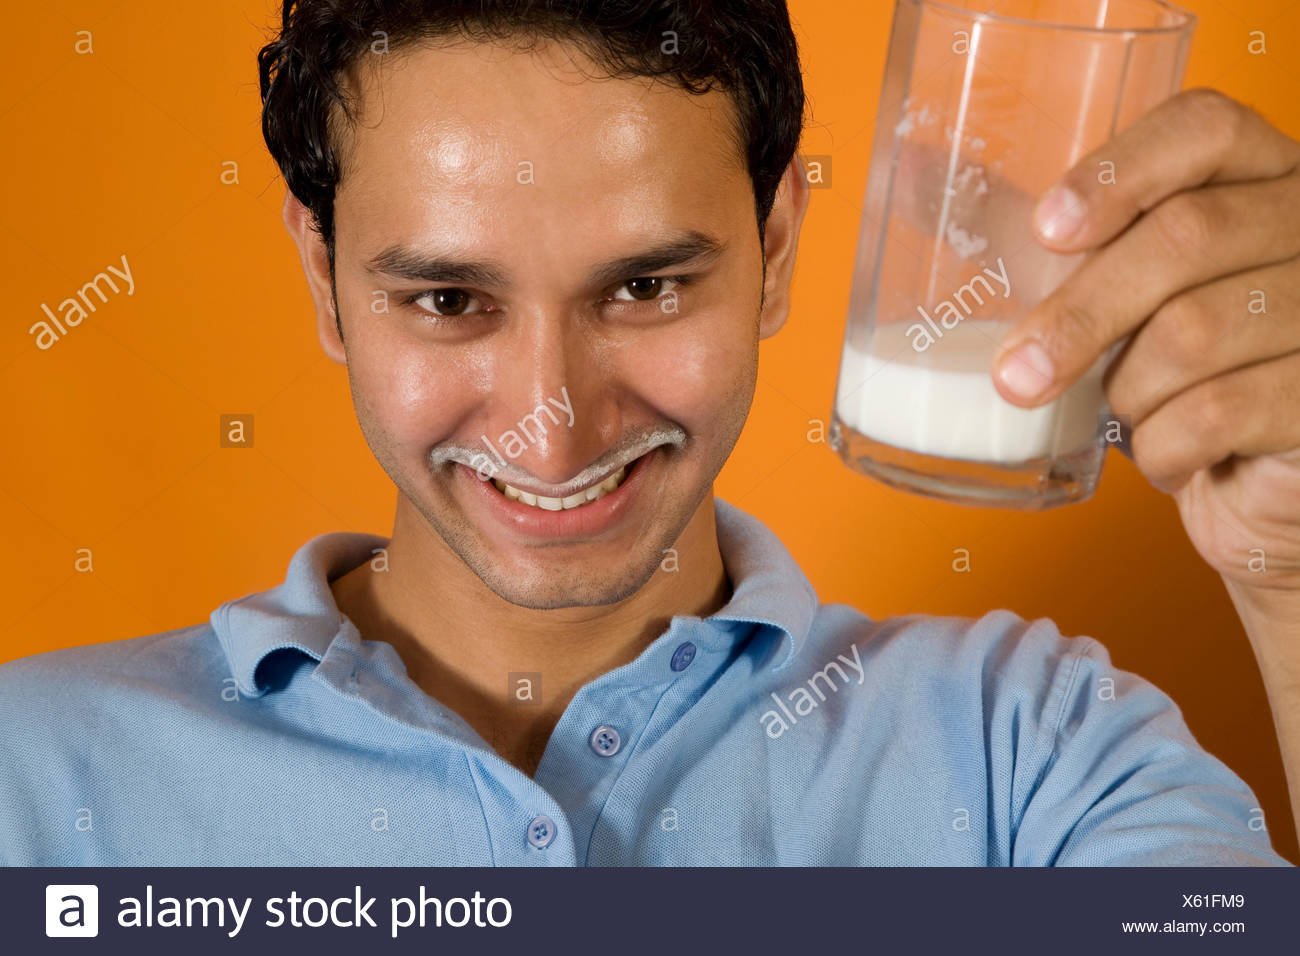 man-drinking-a-glass-of-milk-X61FM9.jpg